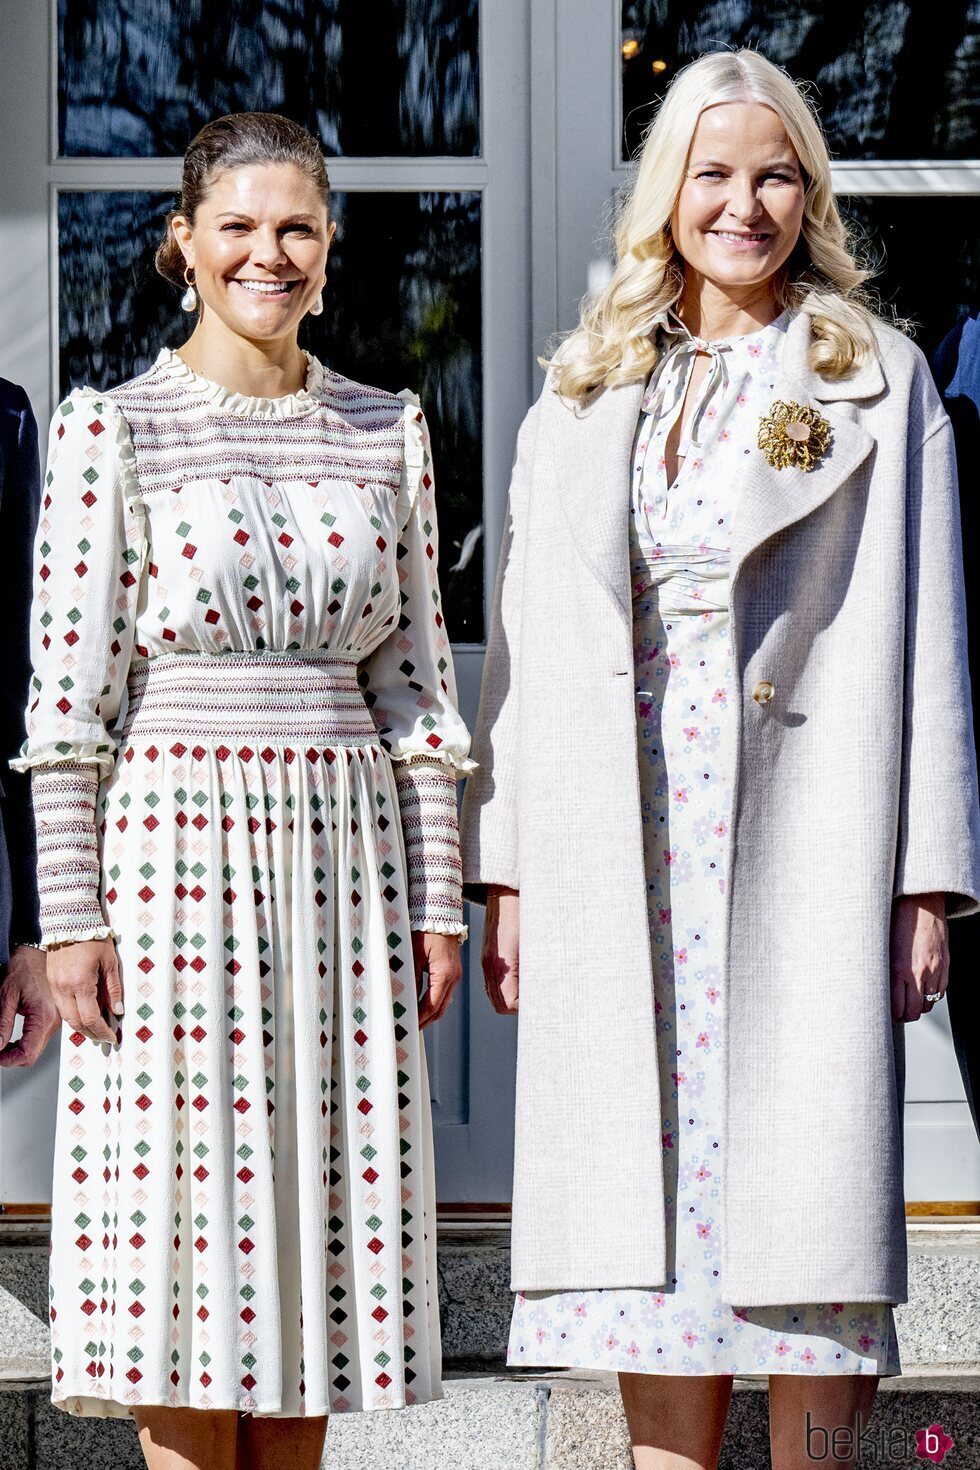 Victoria de Suecia y Mette-Marit de Noruega en el Palacio de Haga